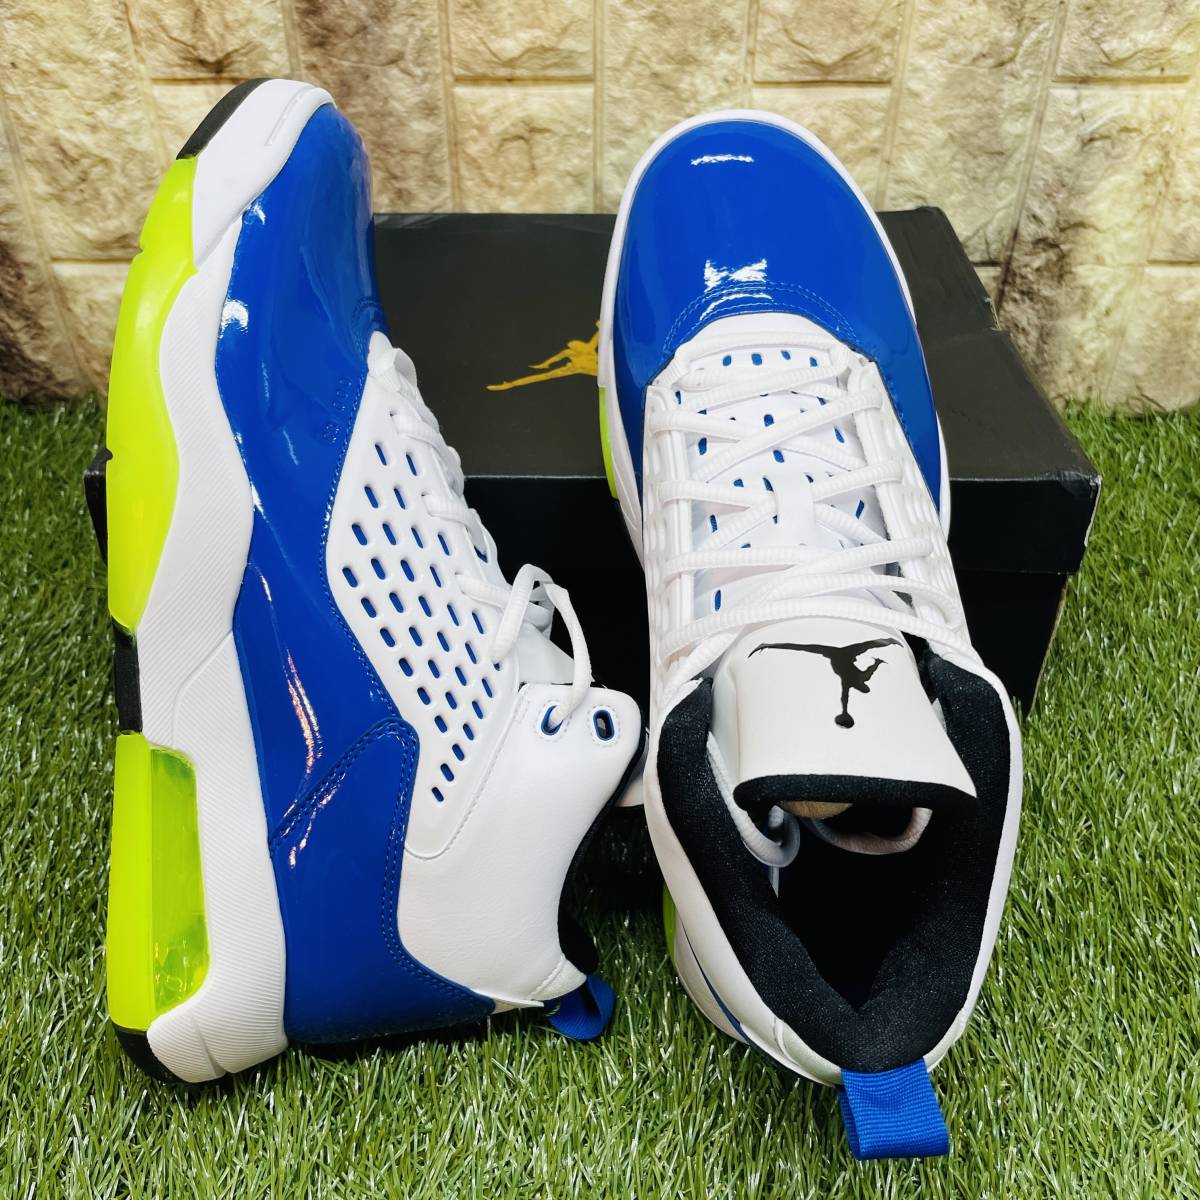 即決 ナイキ ジョーダン マキシン 200 Nike Jordan Maxin 200 メンズ スニーカー 白青黄 29.0cm 送料込み CD6107-400_画像5